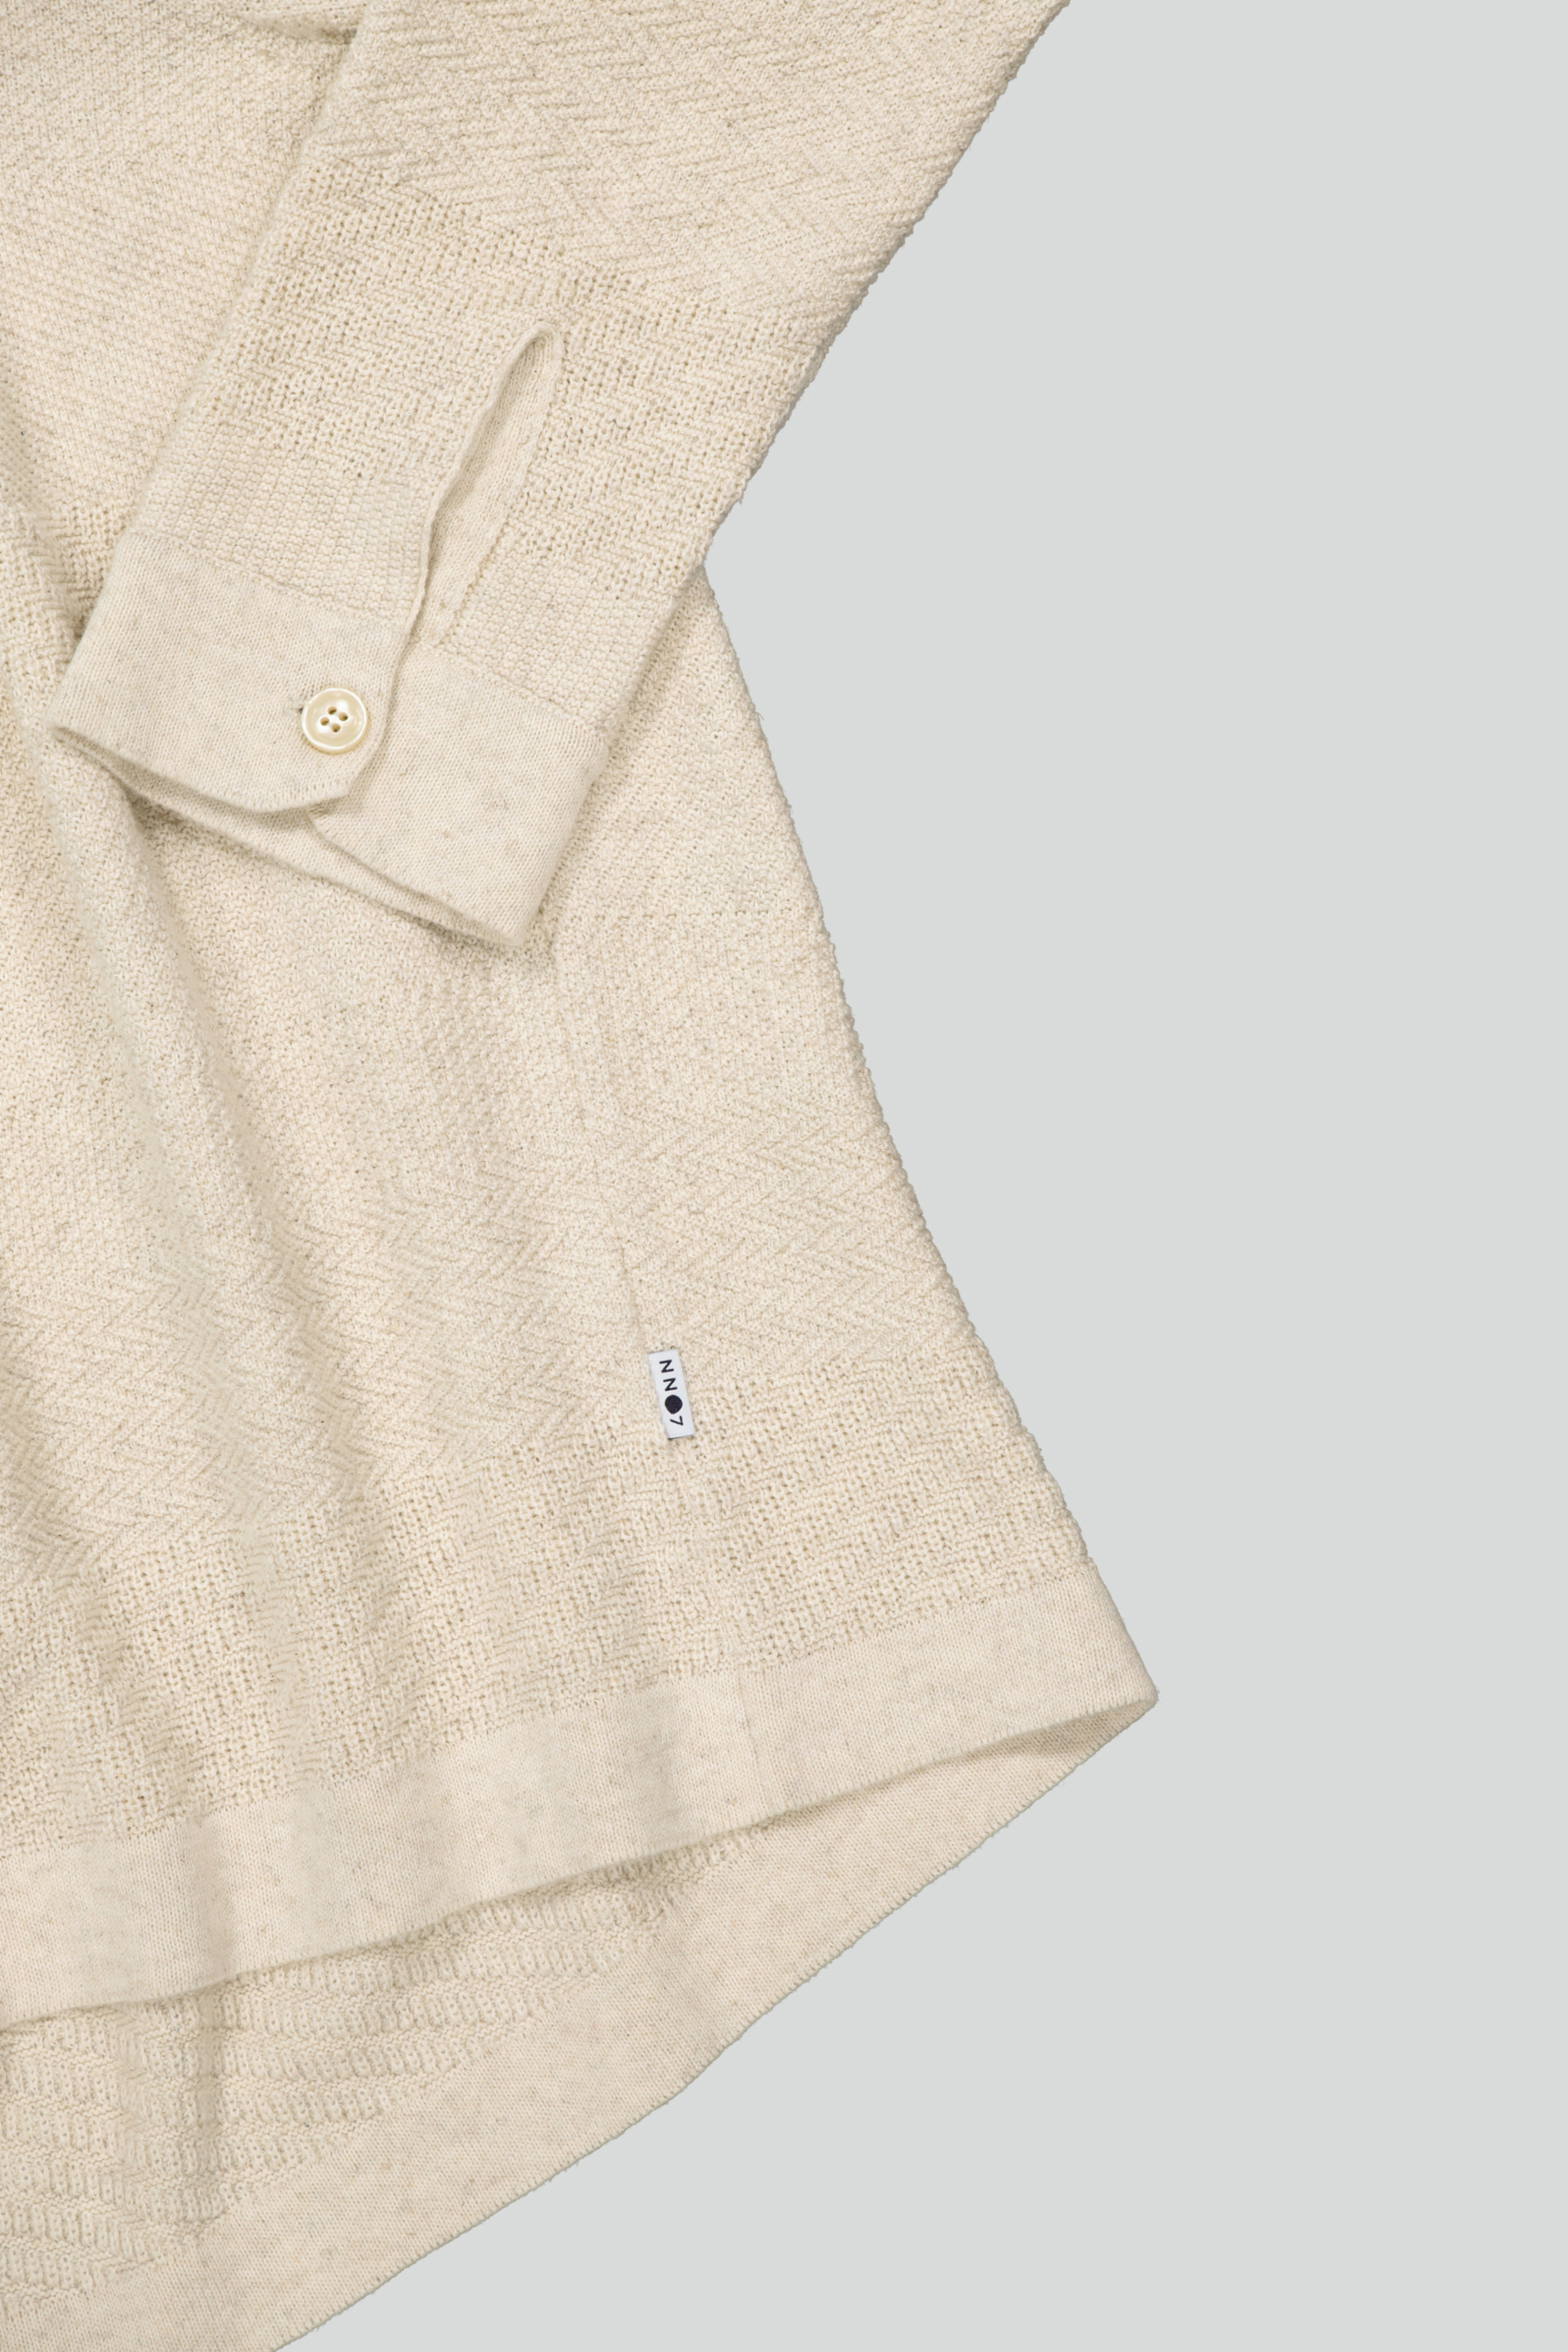 NN07 - Troy 6575 Button-Up Shirt Ecru | Høyer